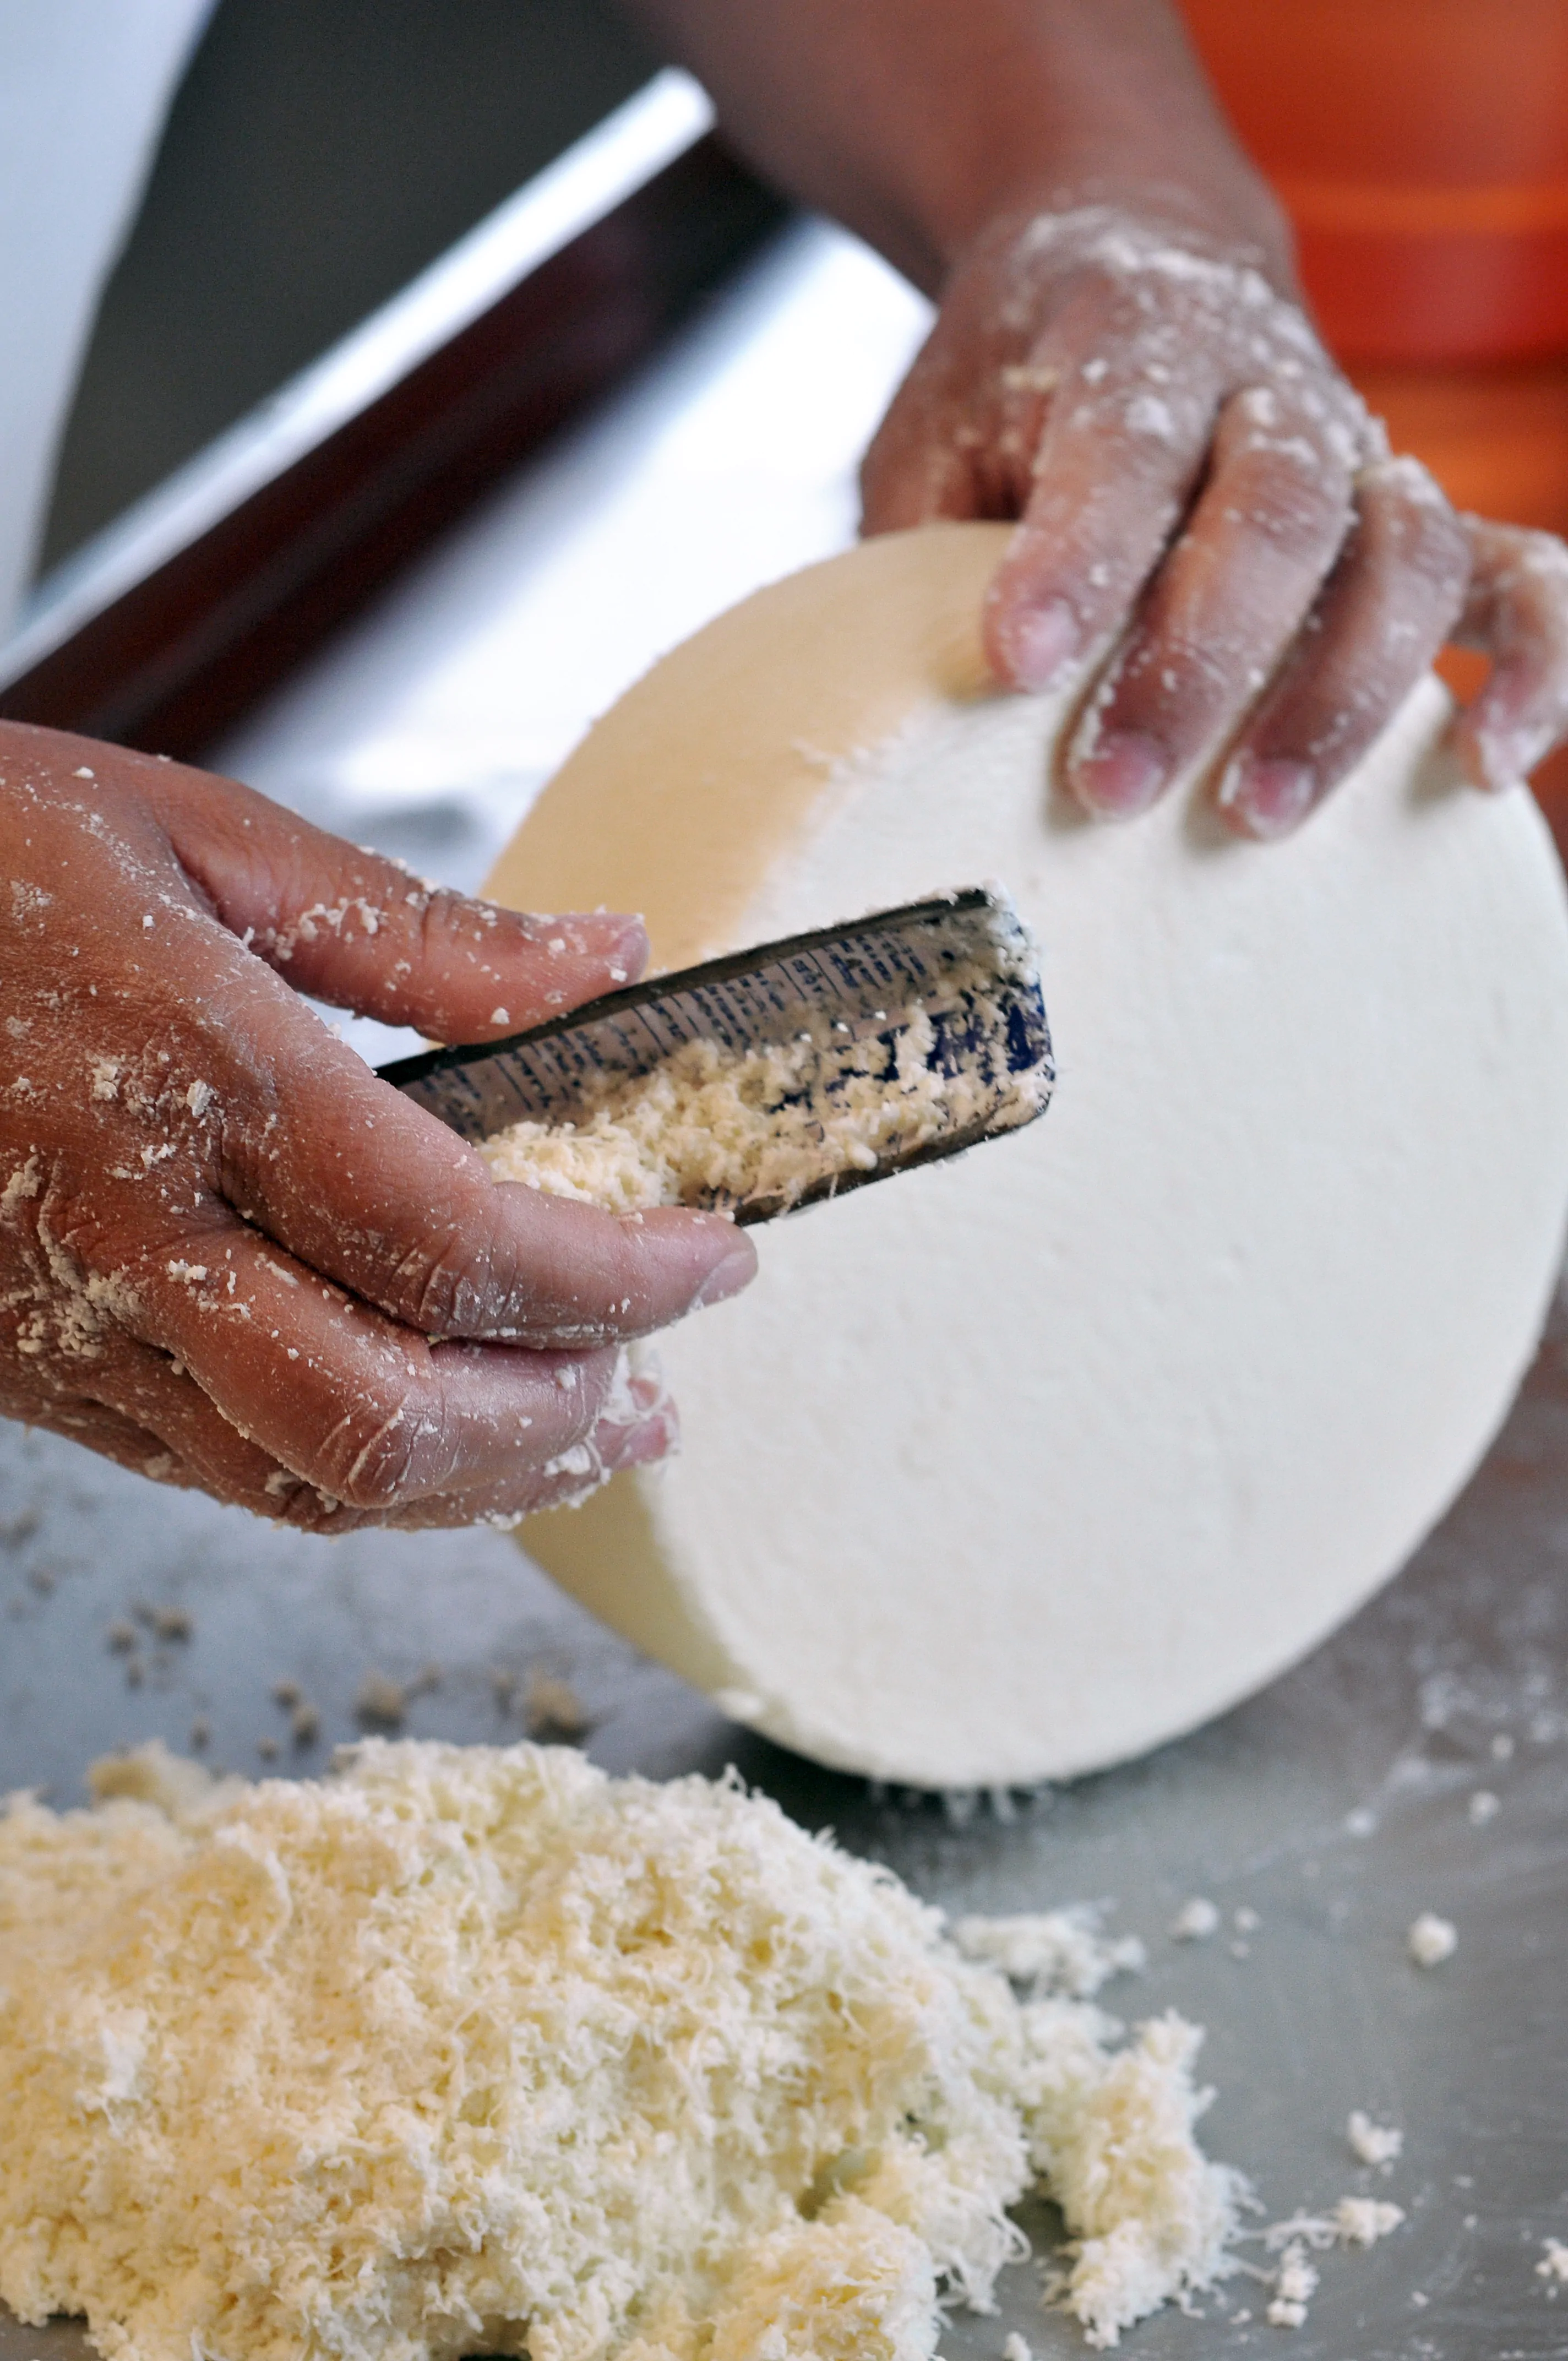 Cobertura da produção de queijos artesanais, tendo em vista a publicação da Lei 20.549/12